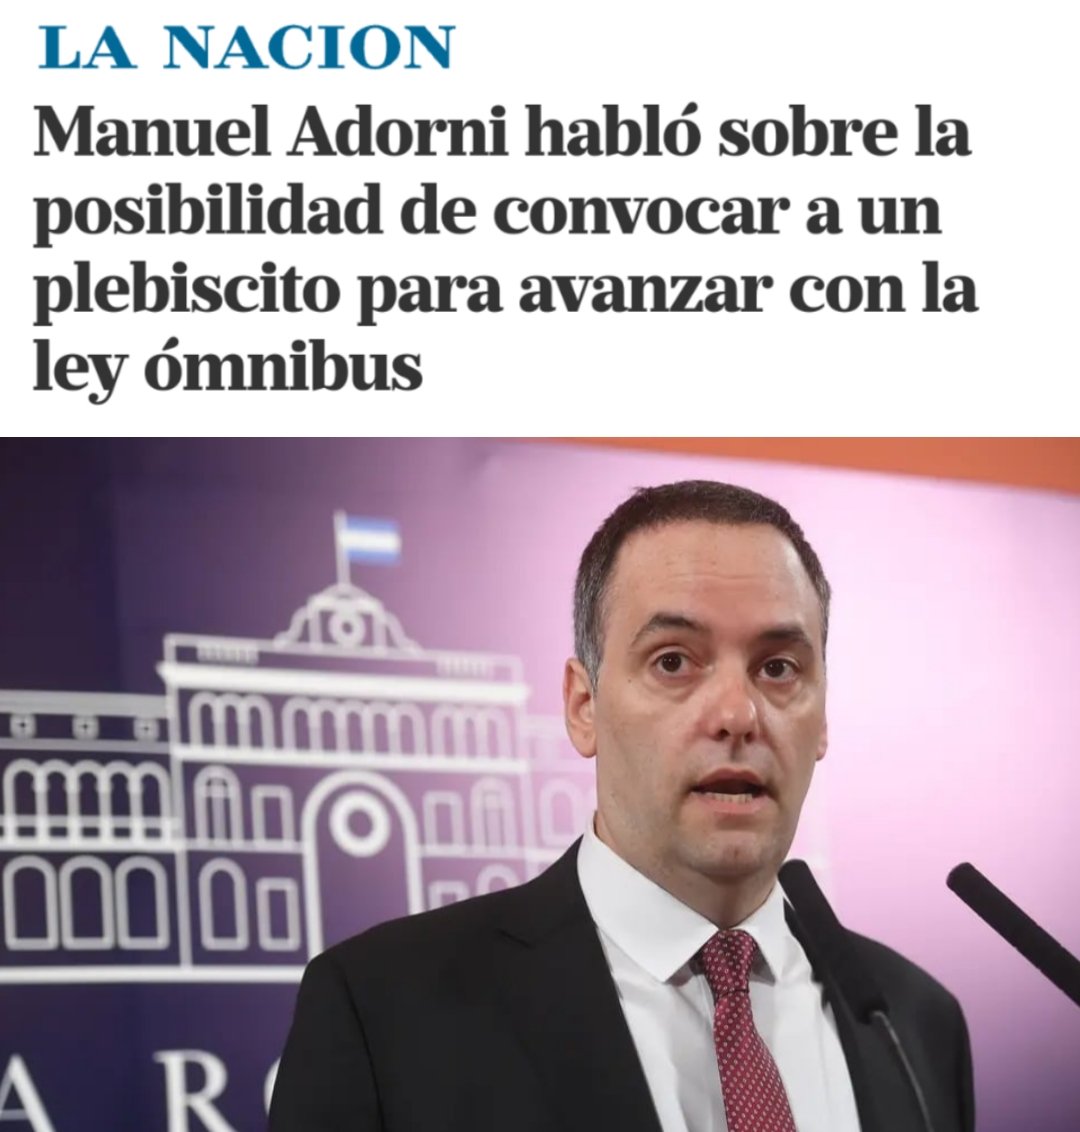 💥 Si el presidente Javier Milei llama a una consulta popular sobre la Ley Ómnibus, ¿cómo votarías?

1- VOTO A FAVOR ✅
2- VOTO EN CONTRA ❌

Los leo 👇